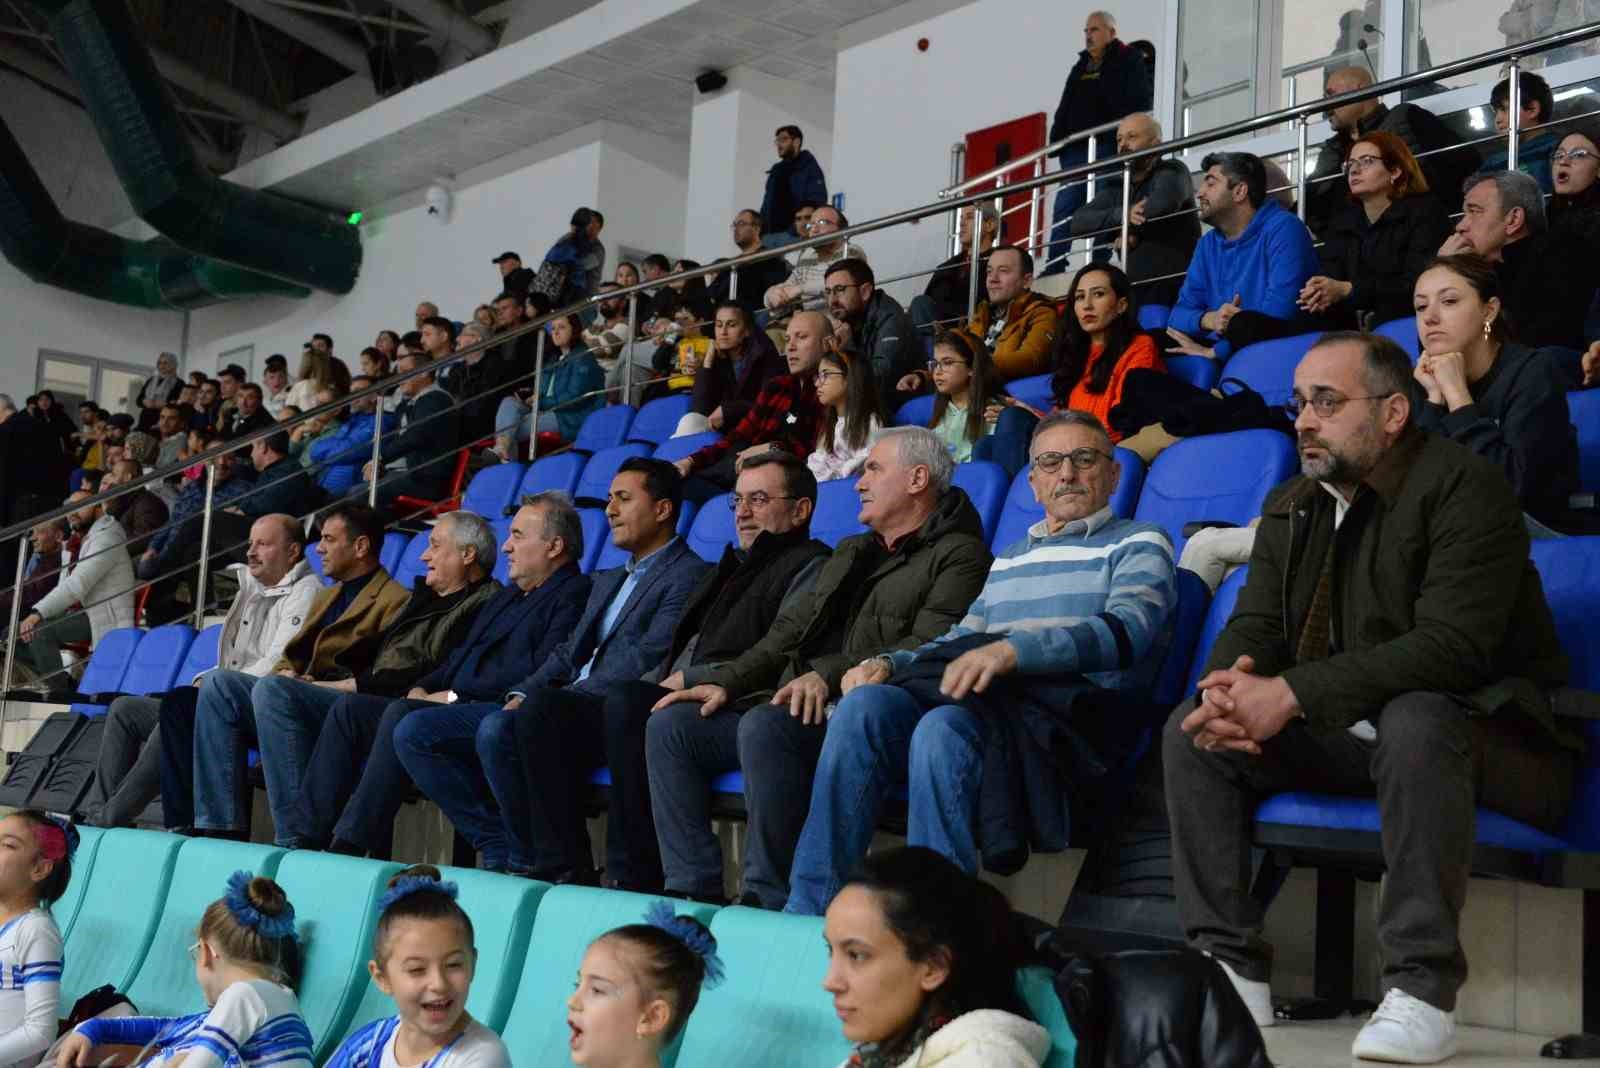 TVF Kadınlar 2. Lig: Bozüyük Belediye Eğitim Spor: 3 - Tepebaşı Gençlik: 0
